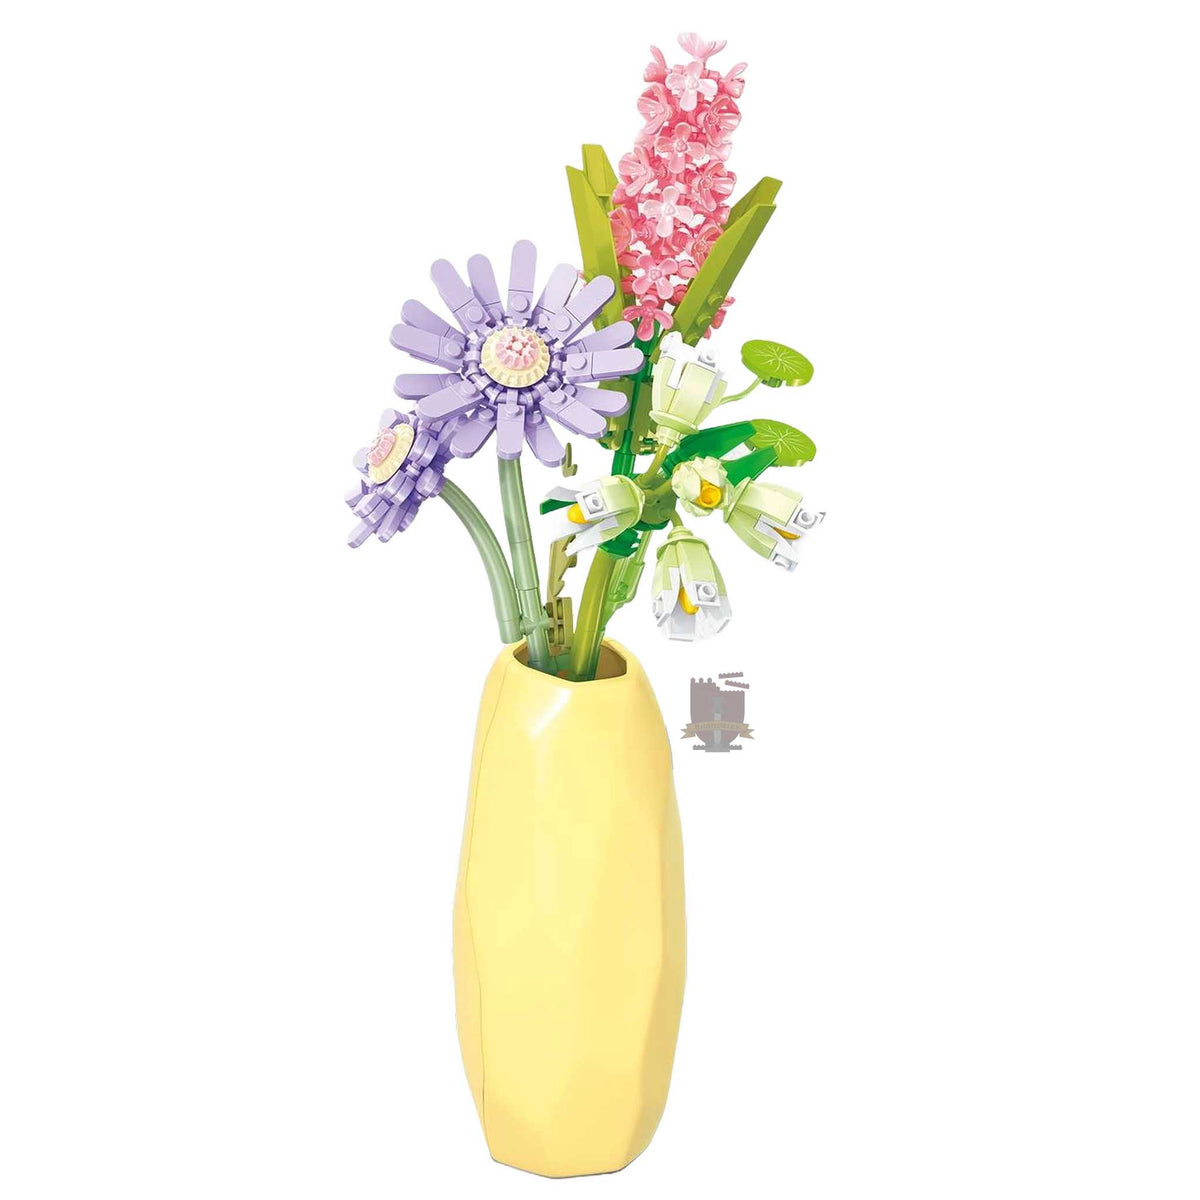 611065 - Gelbe Vase mit Blumen (Sembo)